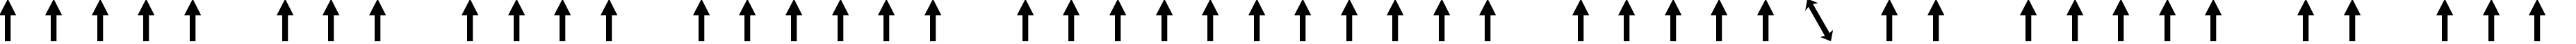 Пример написания шрифтом Arrows1 текста на русском